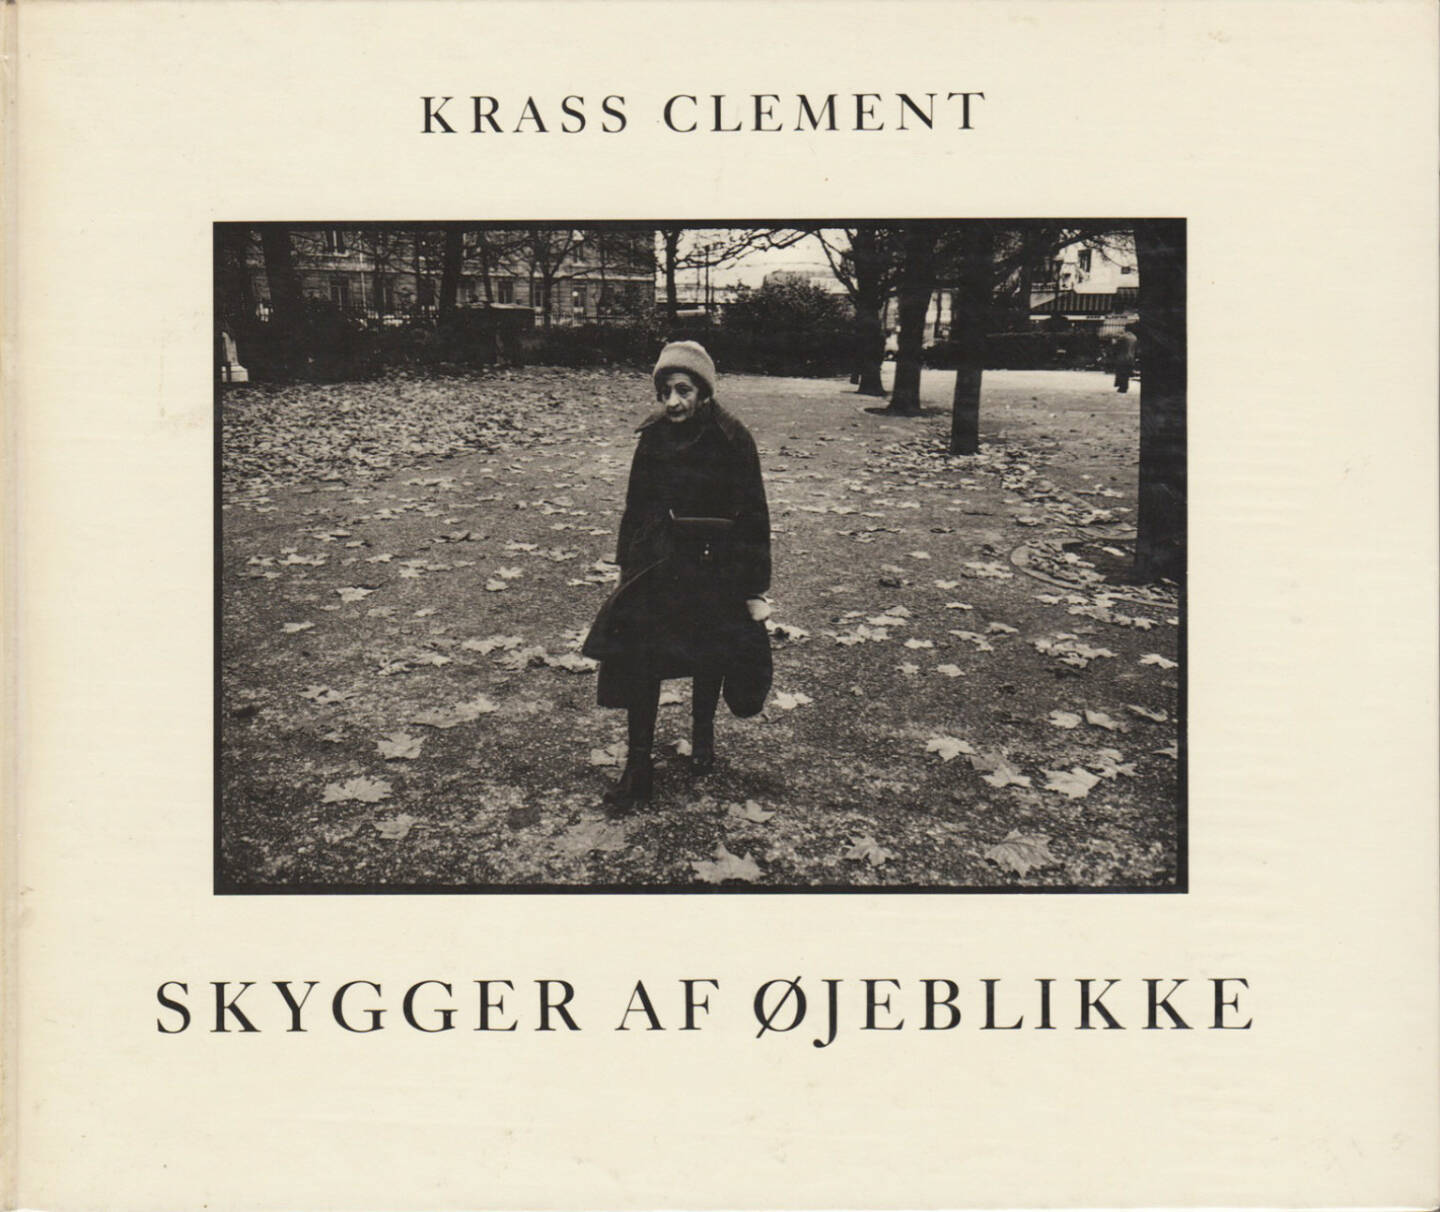 Krass Clement: Skygger af Ojeblikke - 400-600 Euro, http://josefchladek.com/book/krass_clement_-_skygger_af_ojeblikke